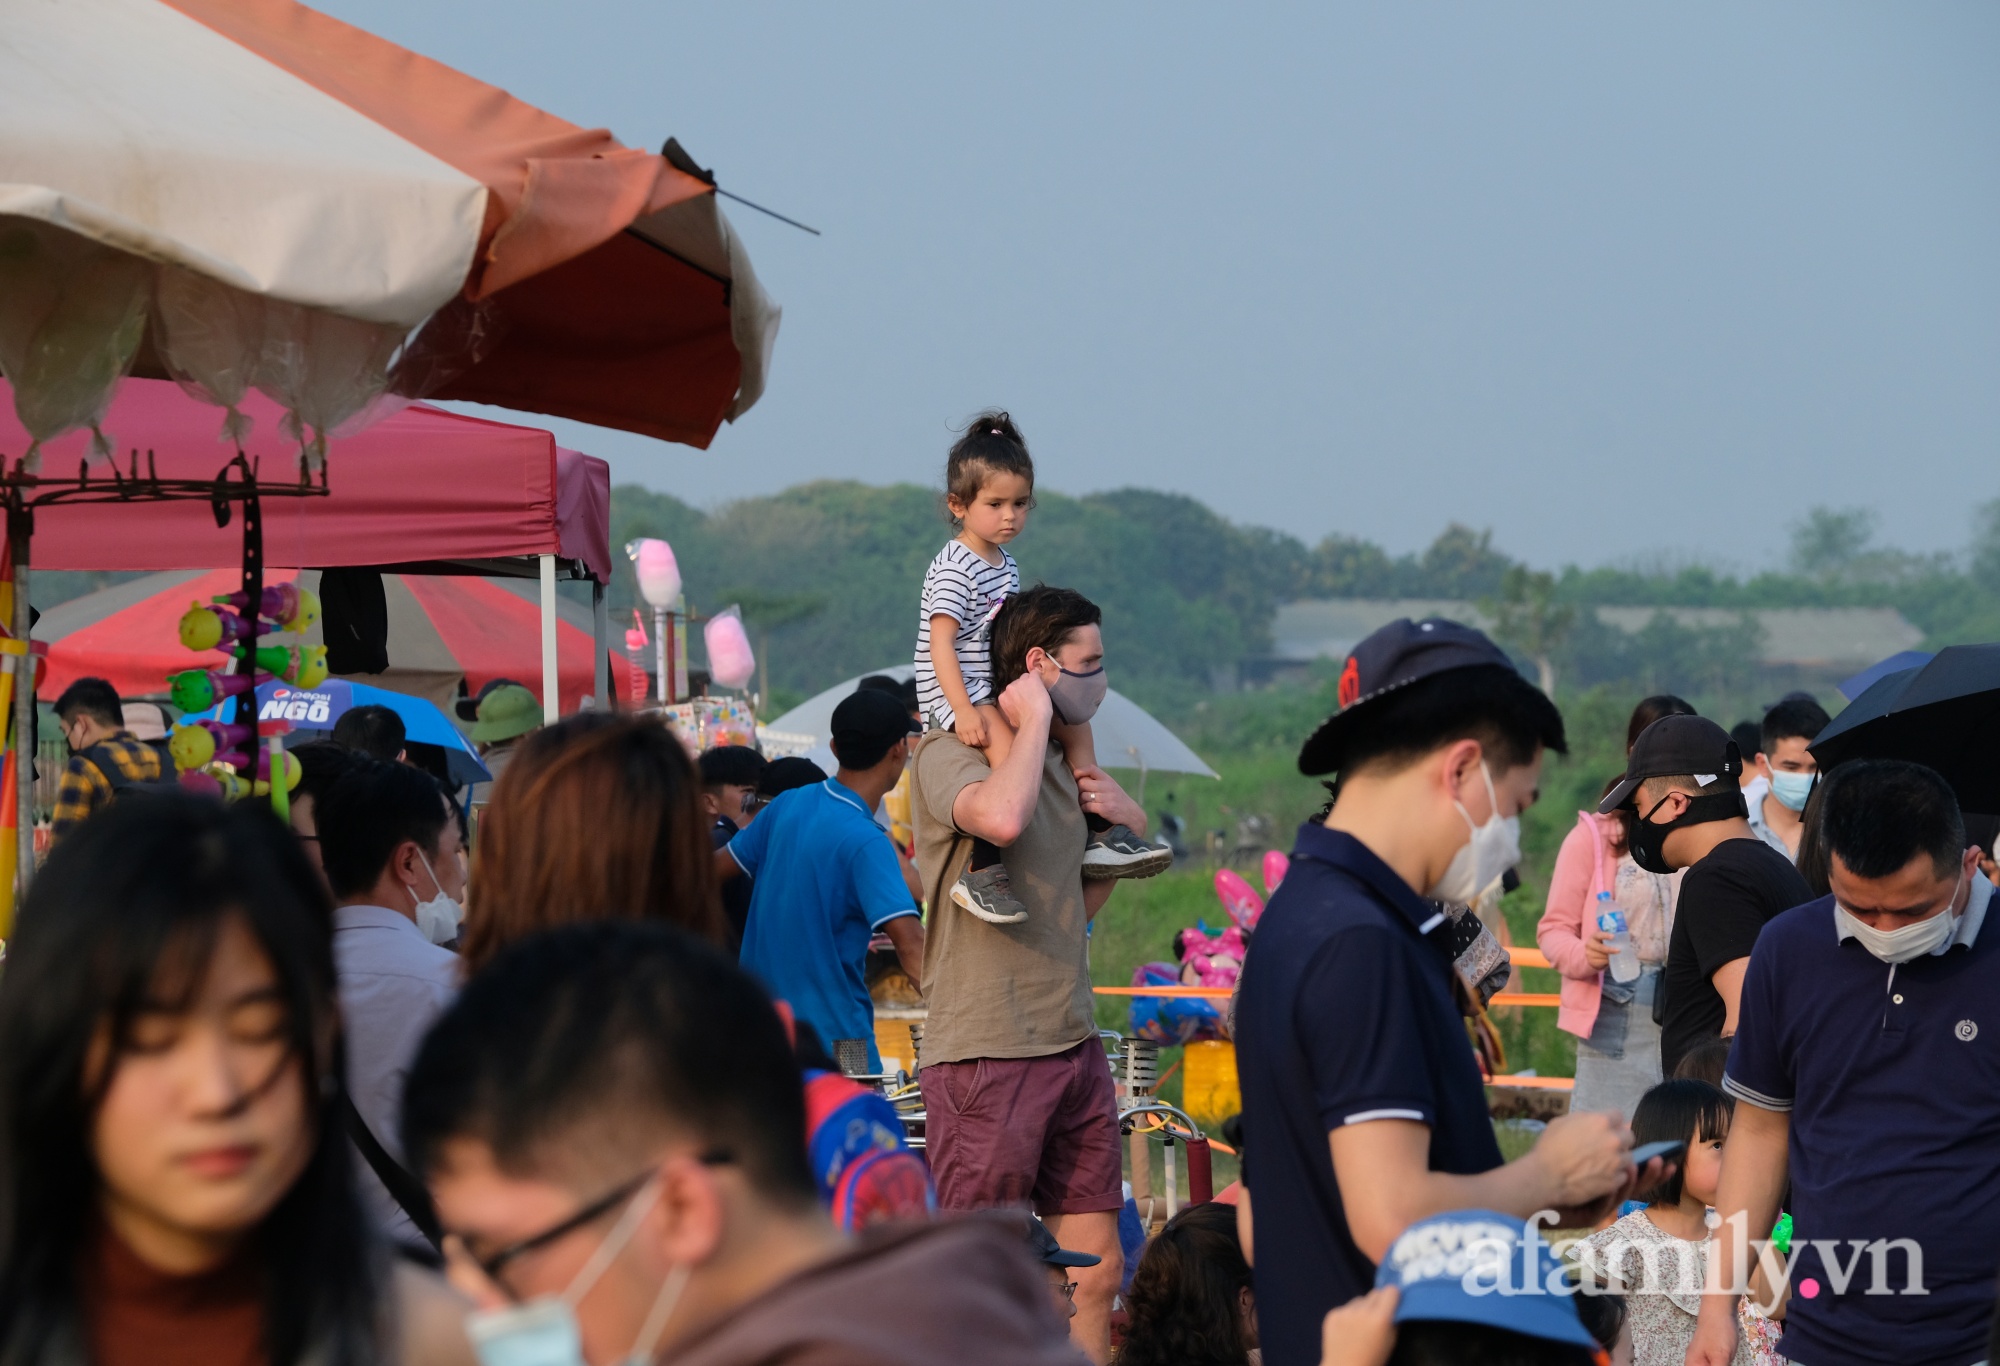 Bãi sông Hồng thất thủ khi hàng trăm người đội nắng tham gia lễ hội khinh khí cầu, trẻ con mệt nhoài theo chân cha mẹ - Ảnh 11.